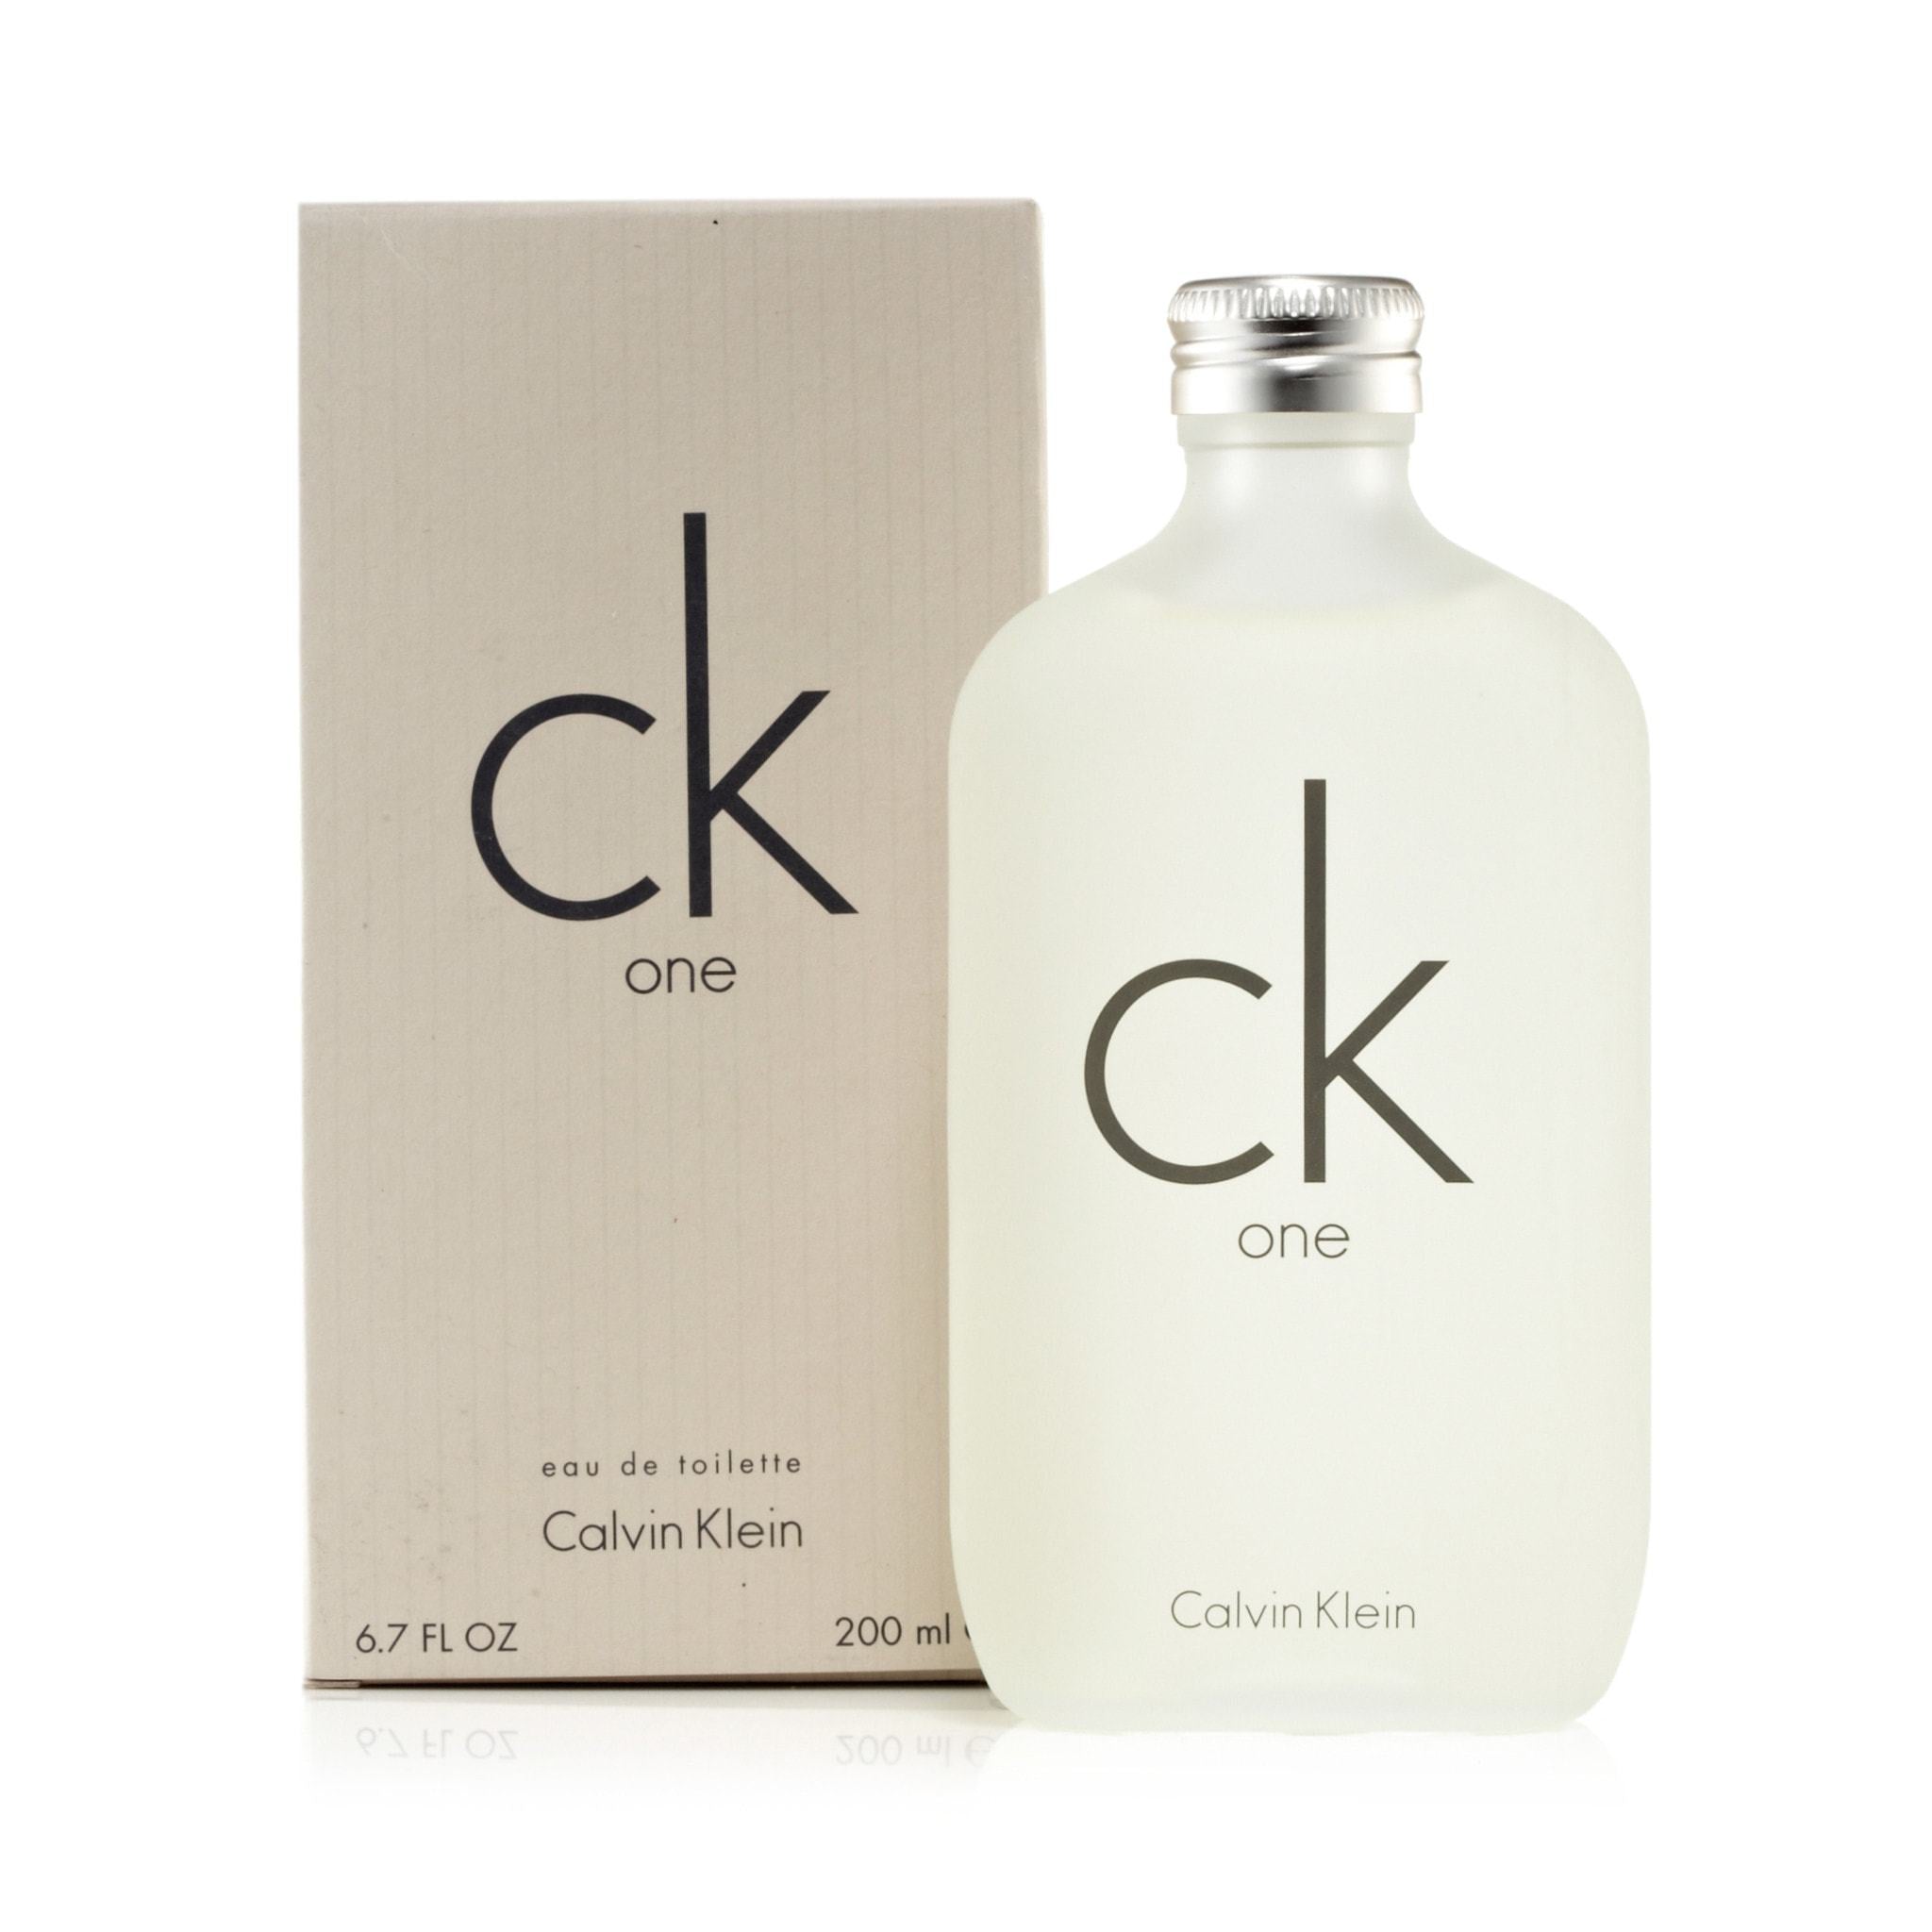 majoor Manoeuvreren Leer CK One For Women And Men By Calvin Klein Eau De Toilette Spray – Perfumania